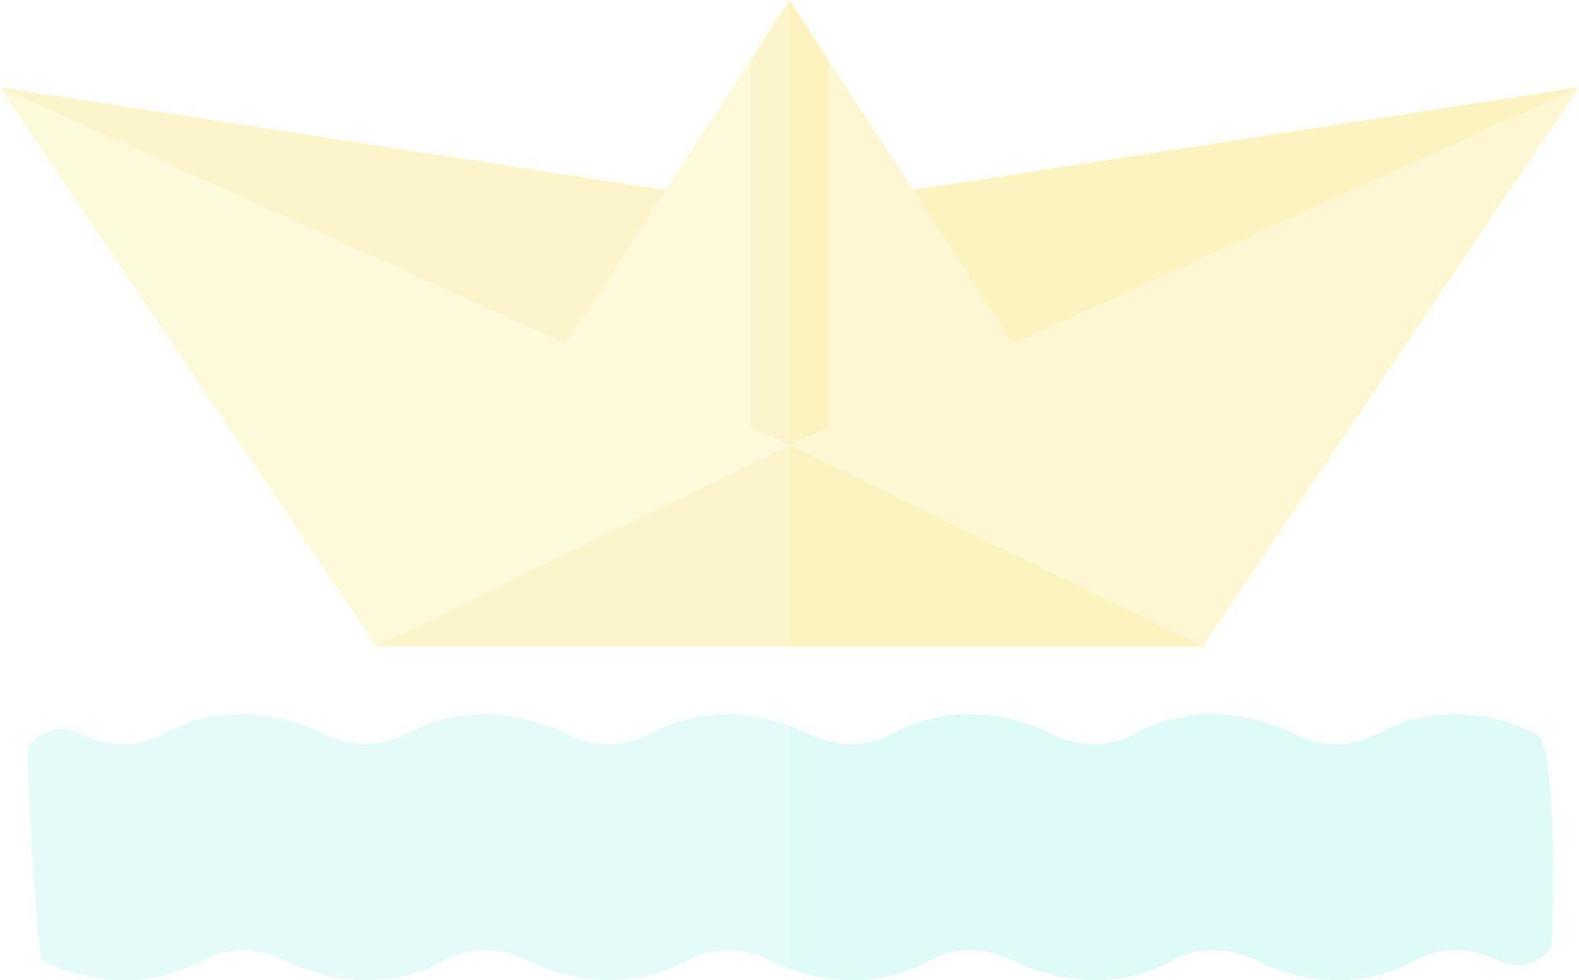 conception d'icône de vecteur de bateau en papier